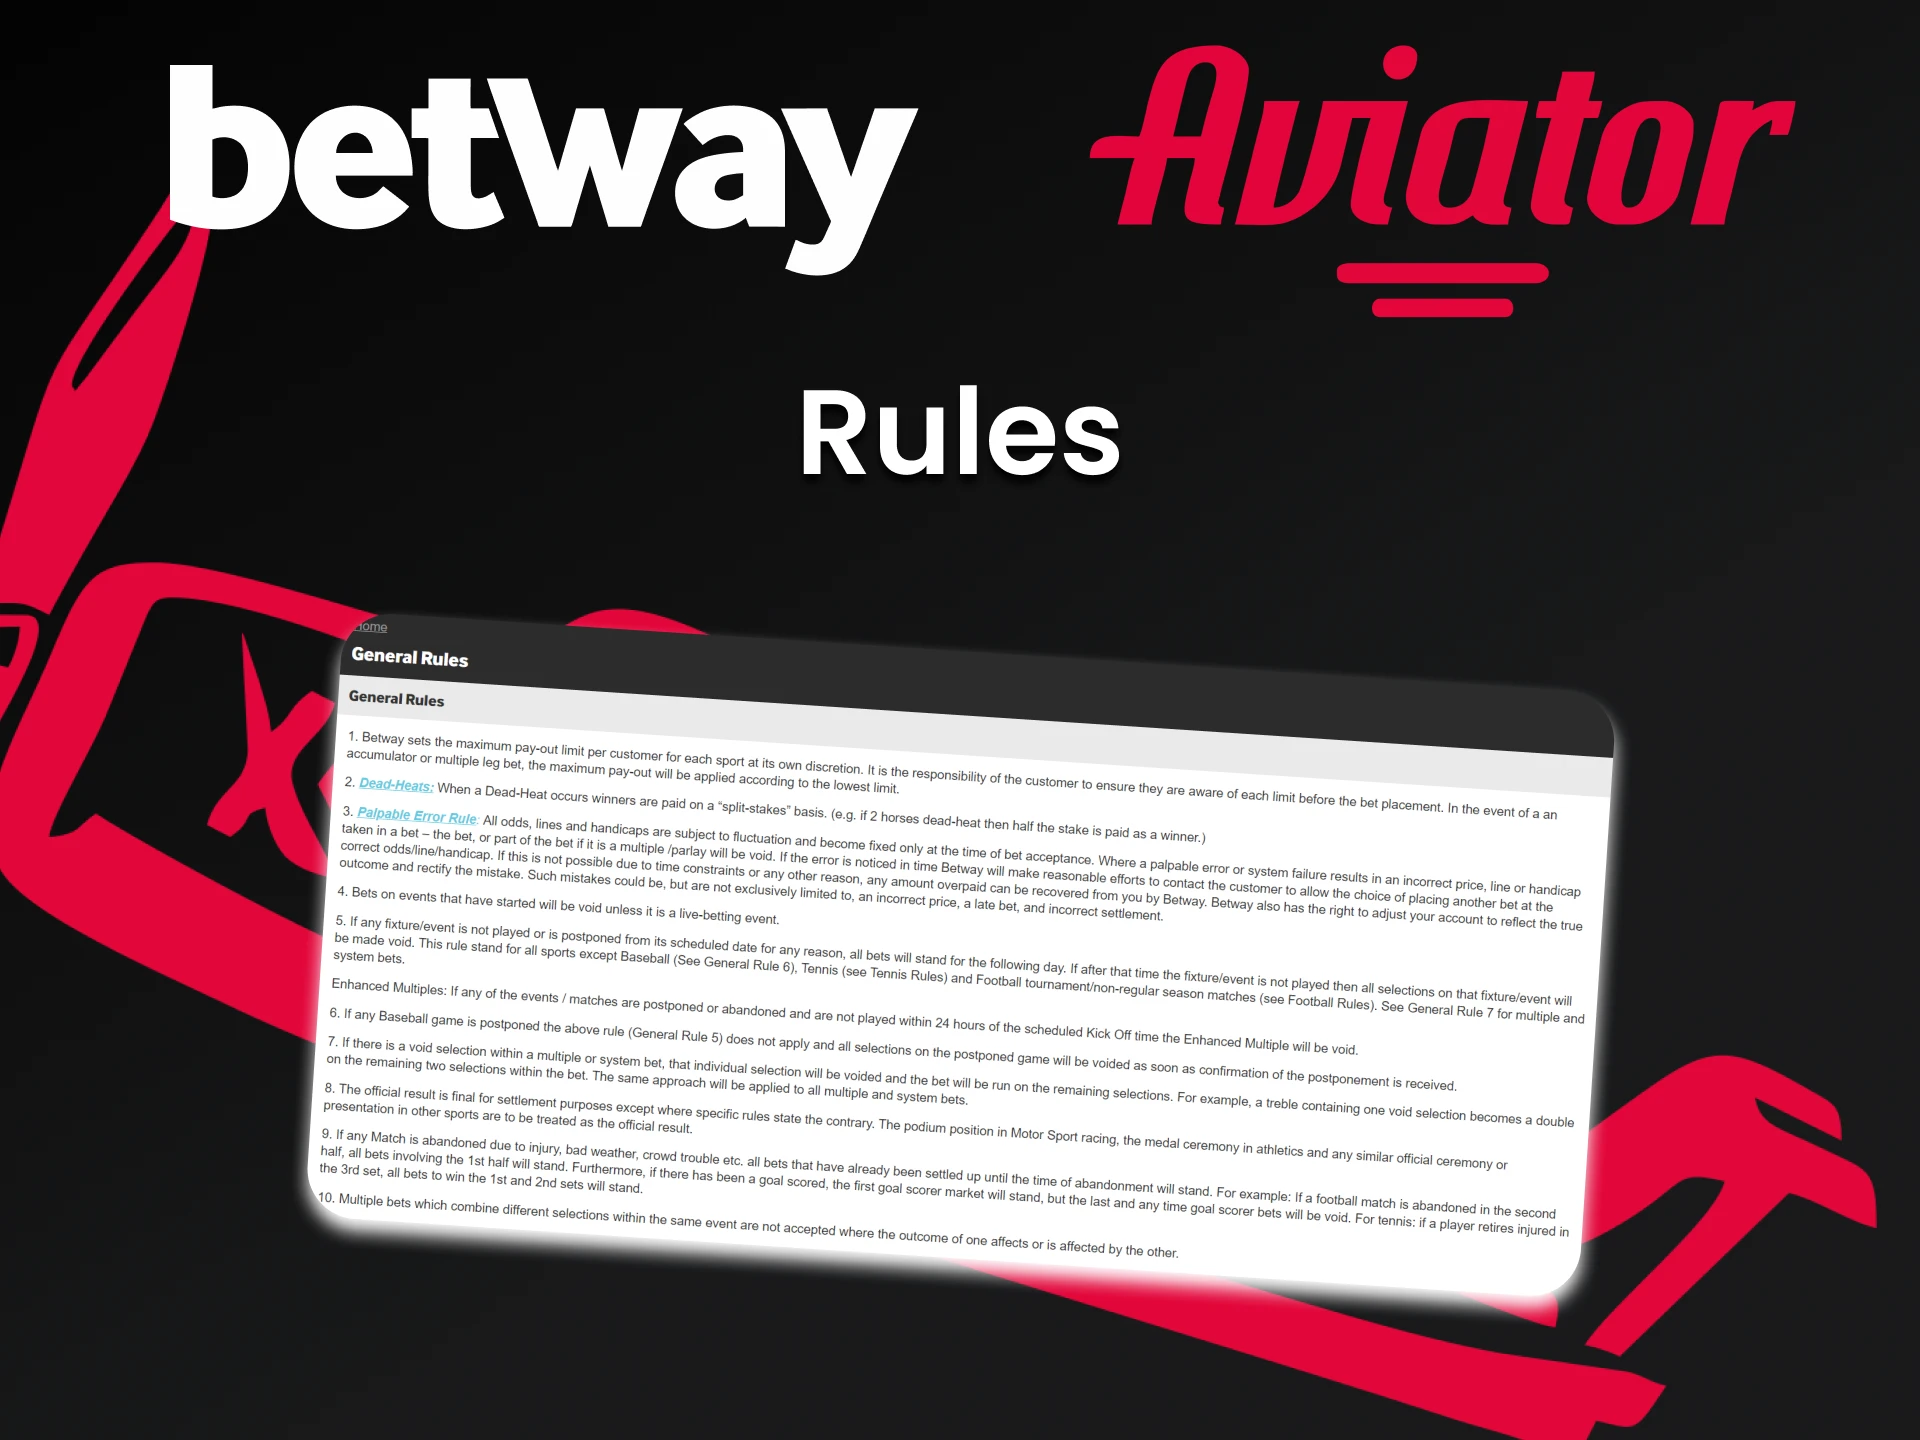 Conheça as regras de utilização do serviço Betway.